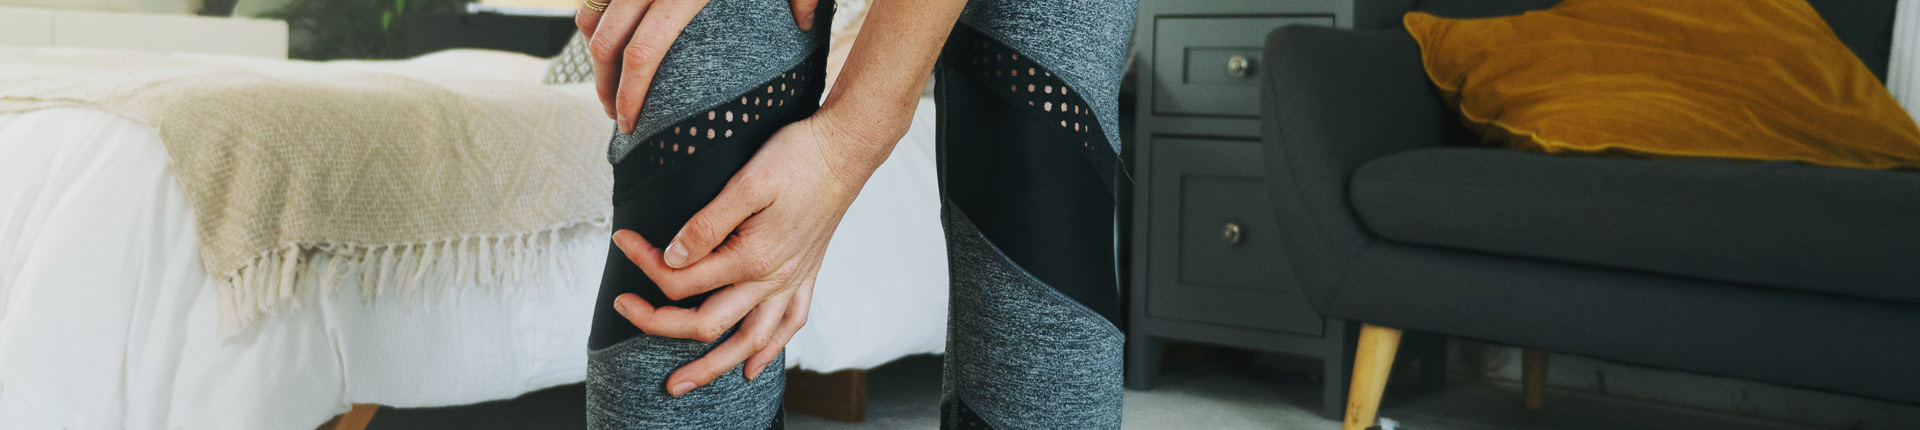 Jak chronić kolana podczas ćwiczeń? Poznaj 7 przydatnych wskazówek